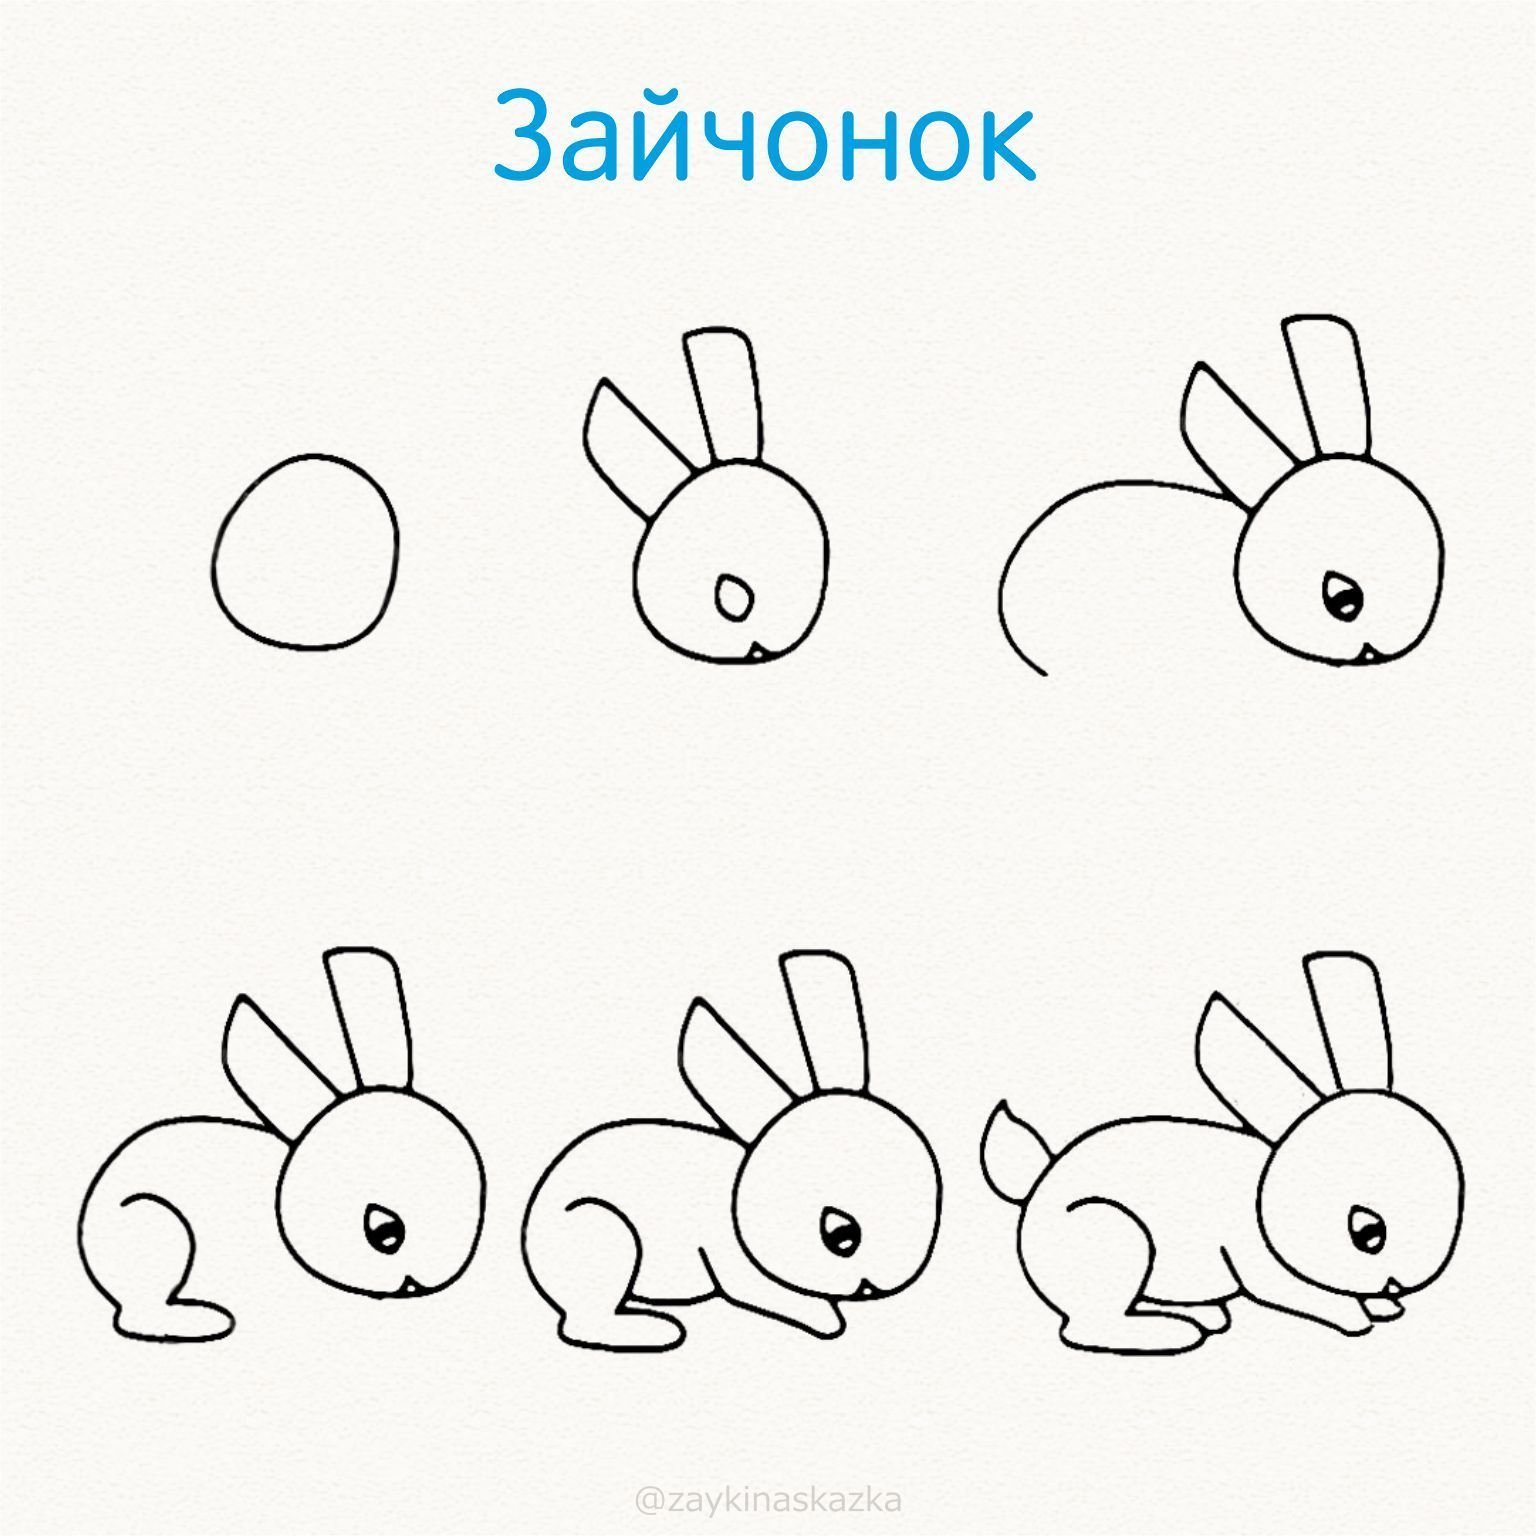 Как нарисовать ребенка поэтапно простым карандашом. Схема рисования зайчика. Рисунок зайца для срисовки. Простые поэтапные рисунки для детей. Заяц рисунок для детей карандашом.